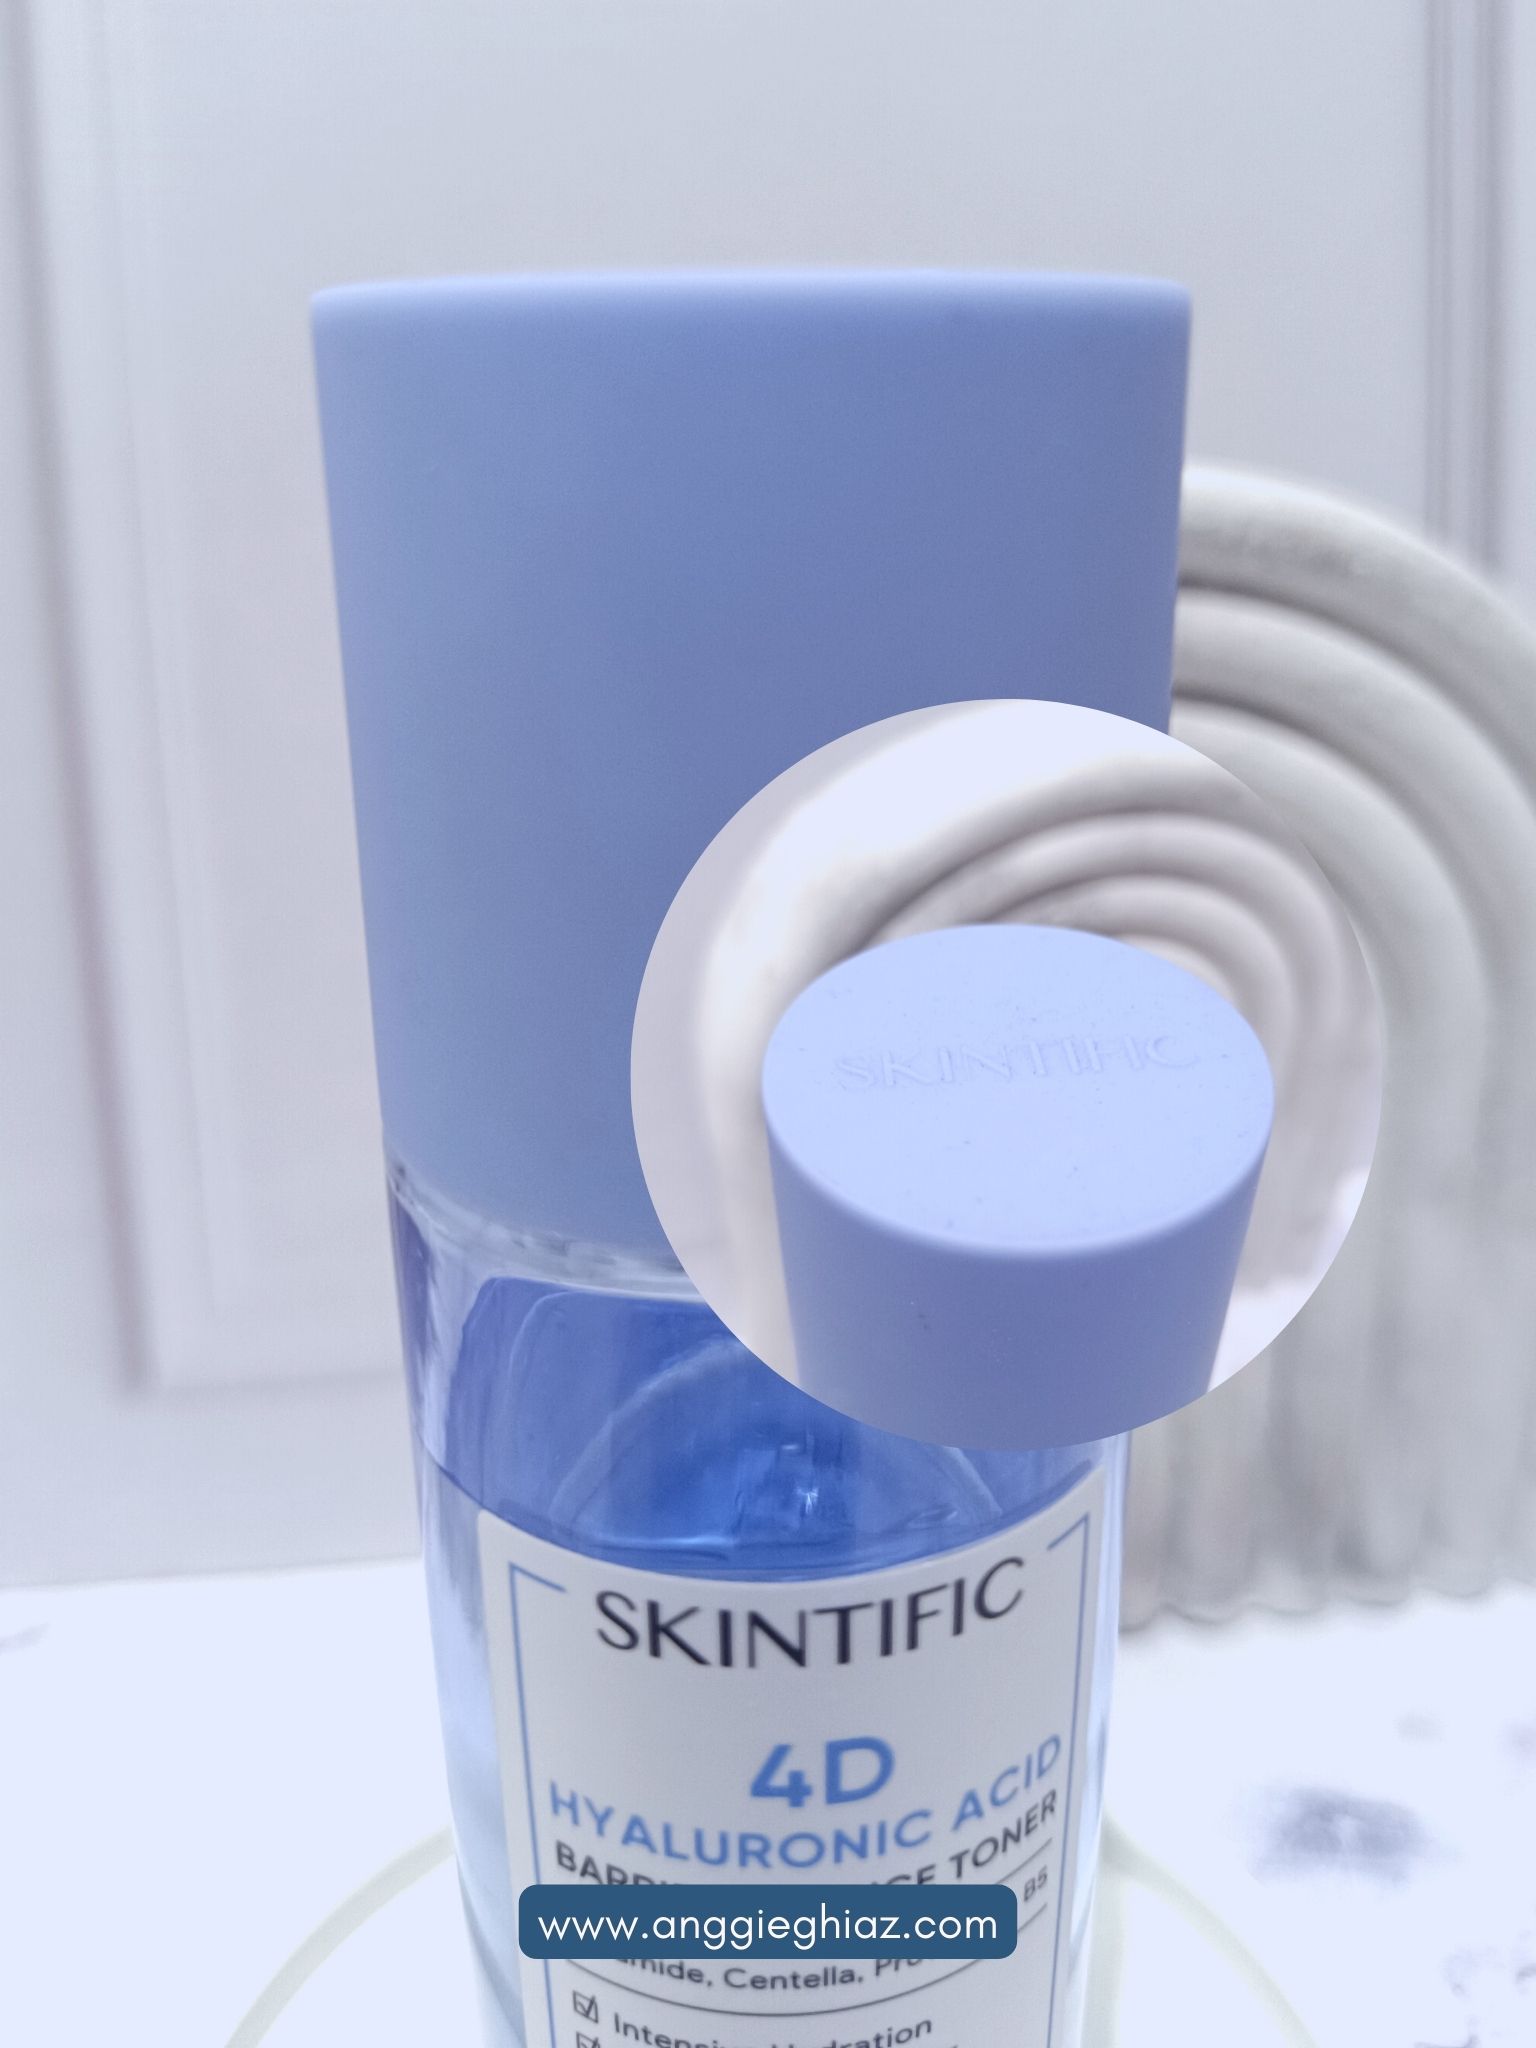 Packaging Skintific 4D Hyaluronic Acid